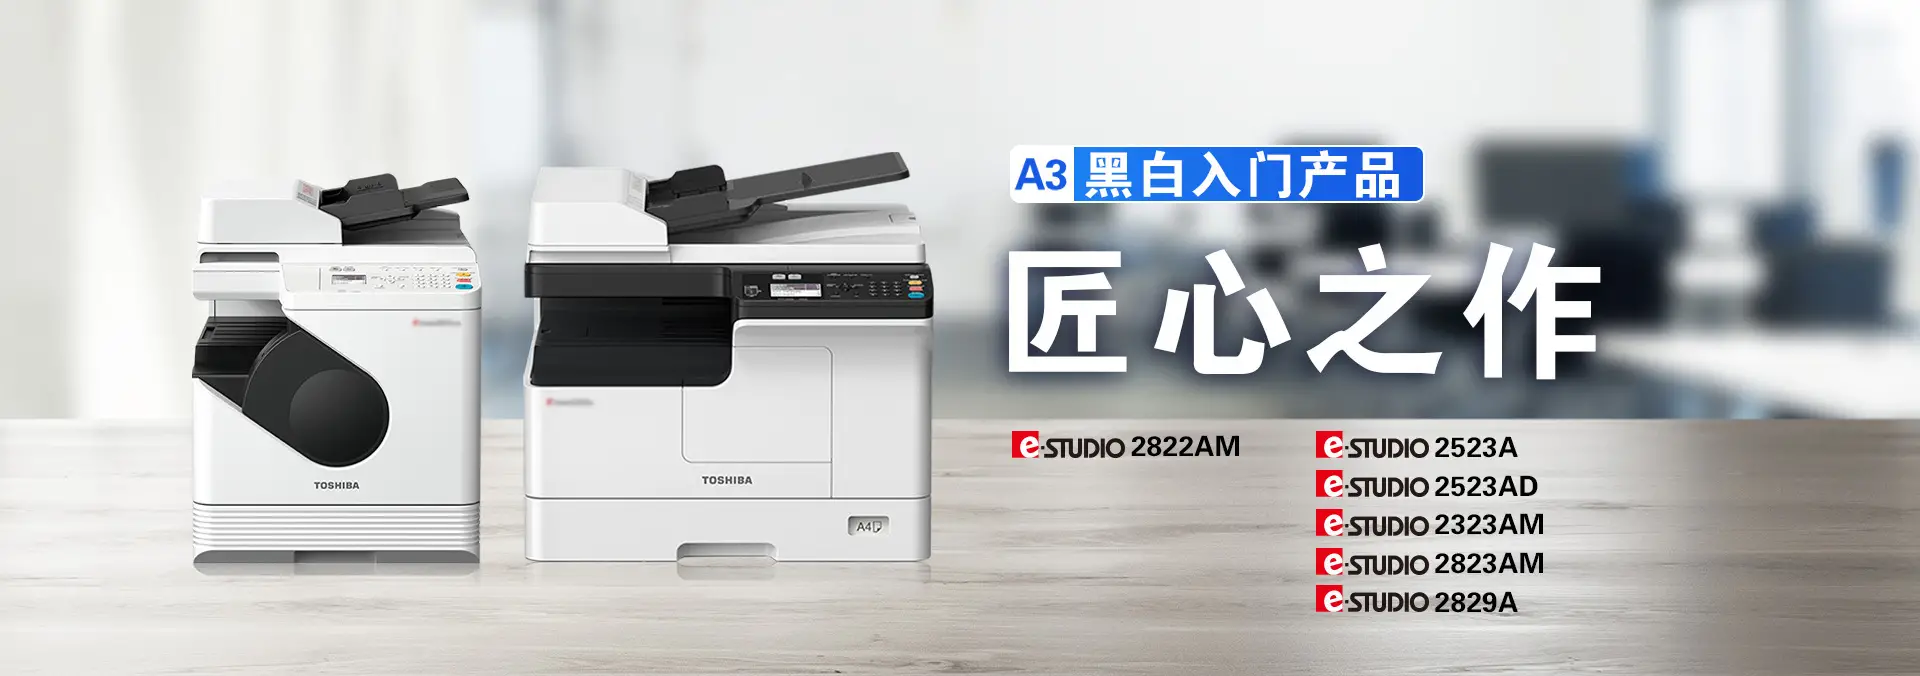 入门复印机首选 - 东芝2323AM系列多功能复印机